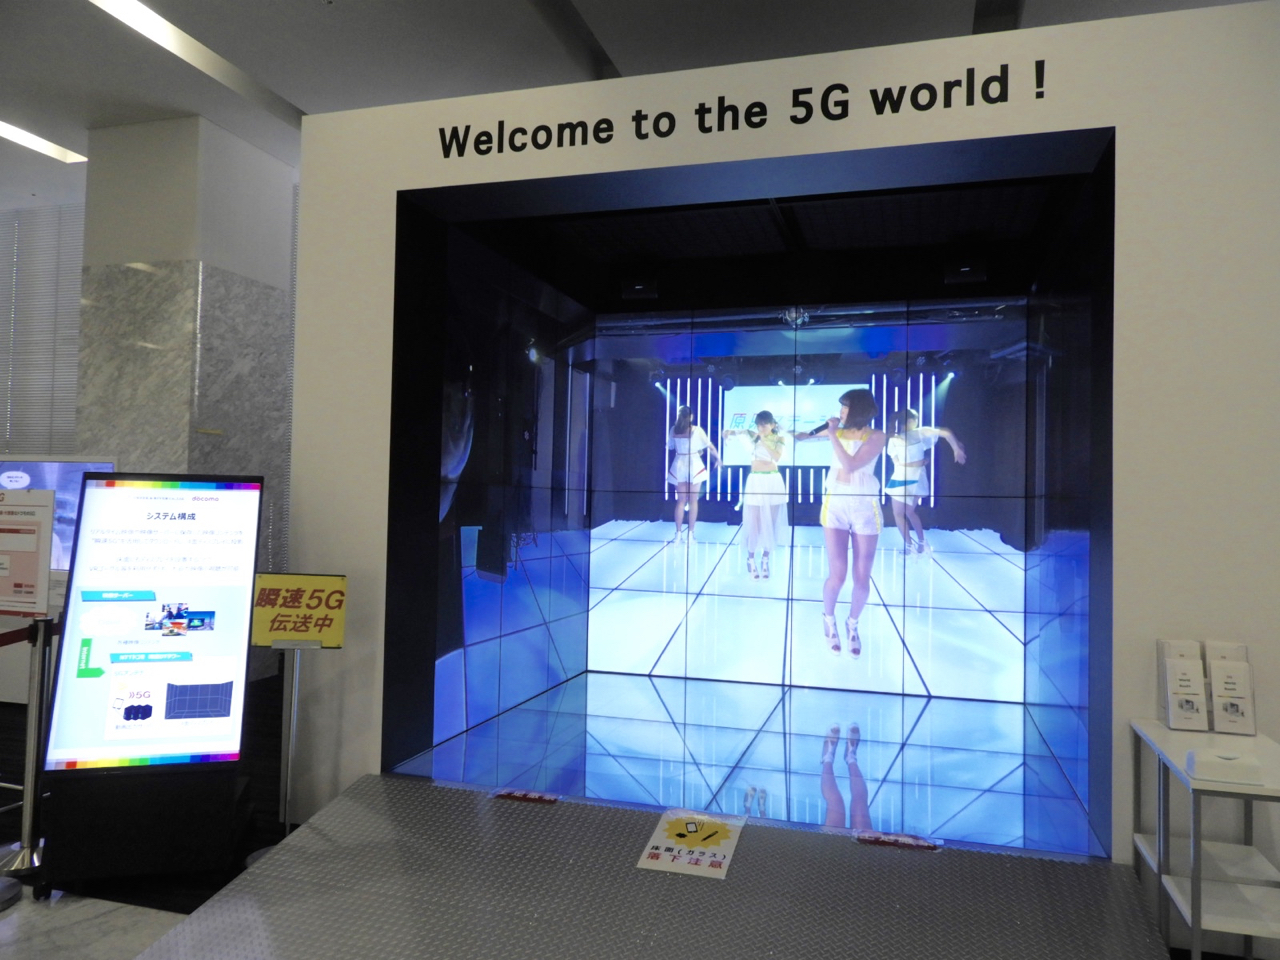 臨場感ある5G映像が体験できる「5G World Booth」をオープン。
